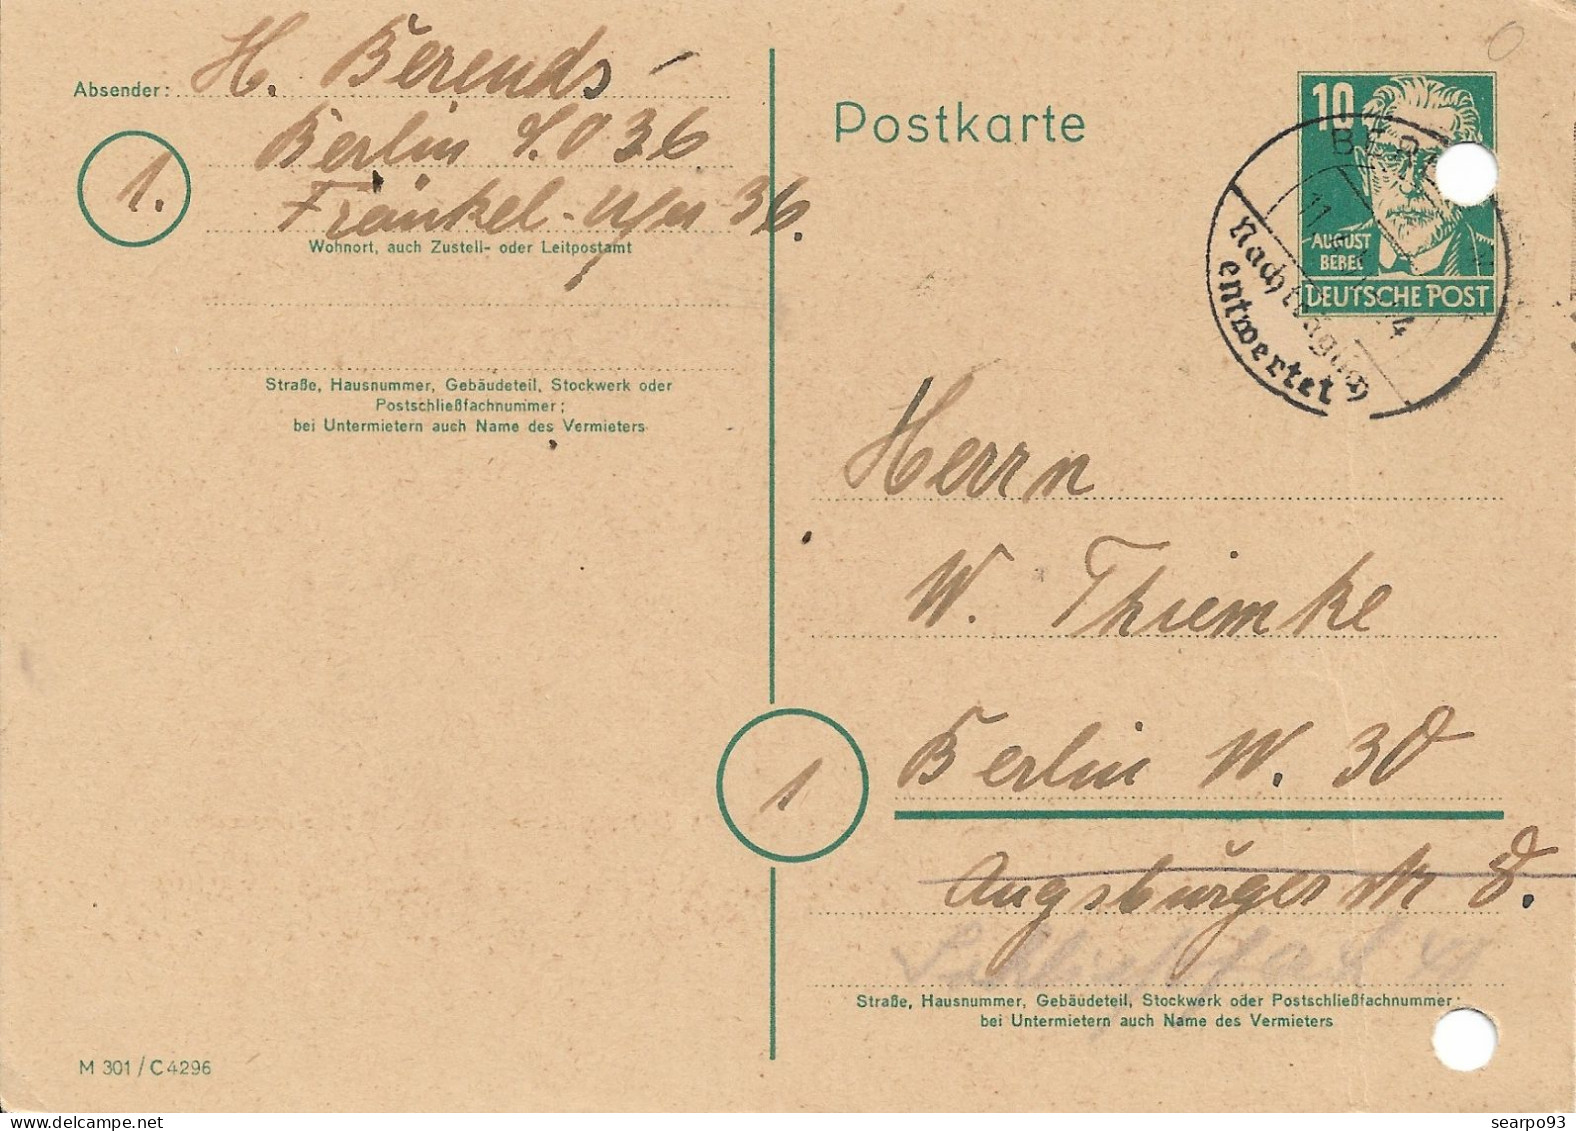 GERMANY. POSTAL STATIONERY, 1951 - Postkarten - Gebraucht